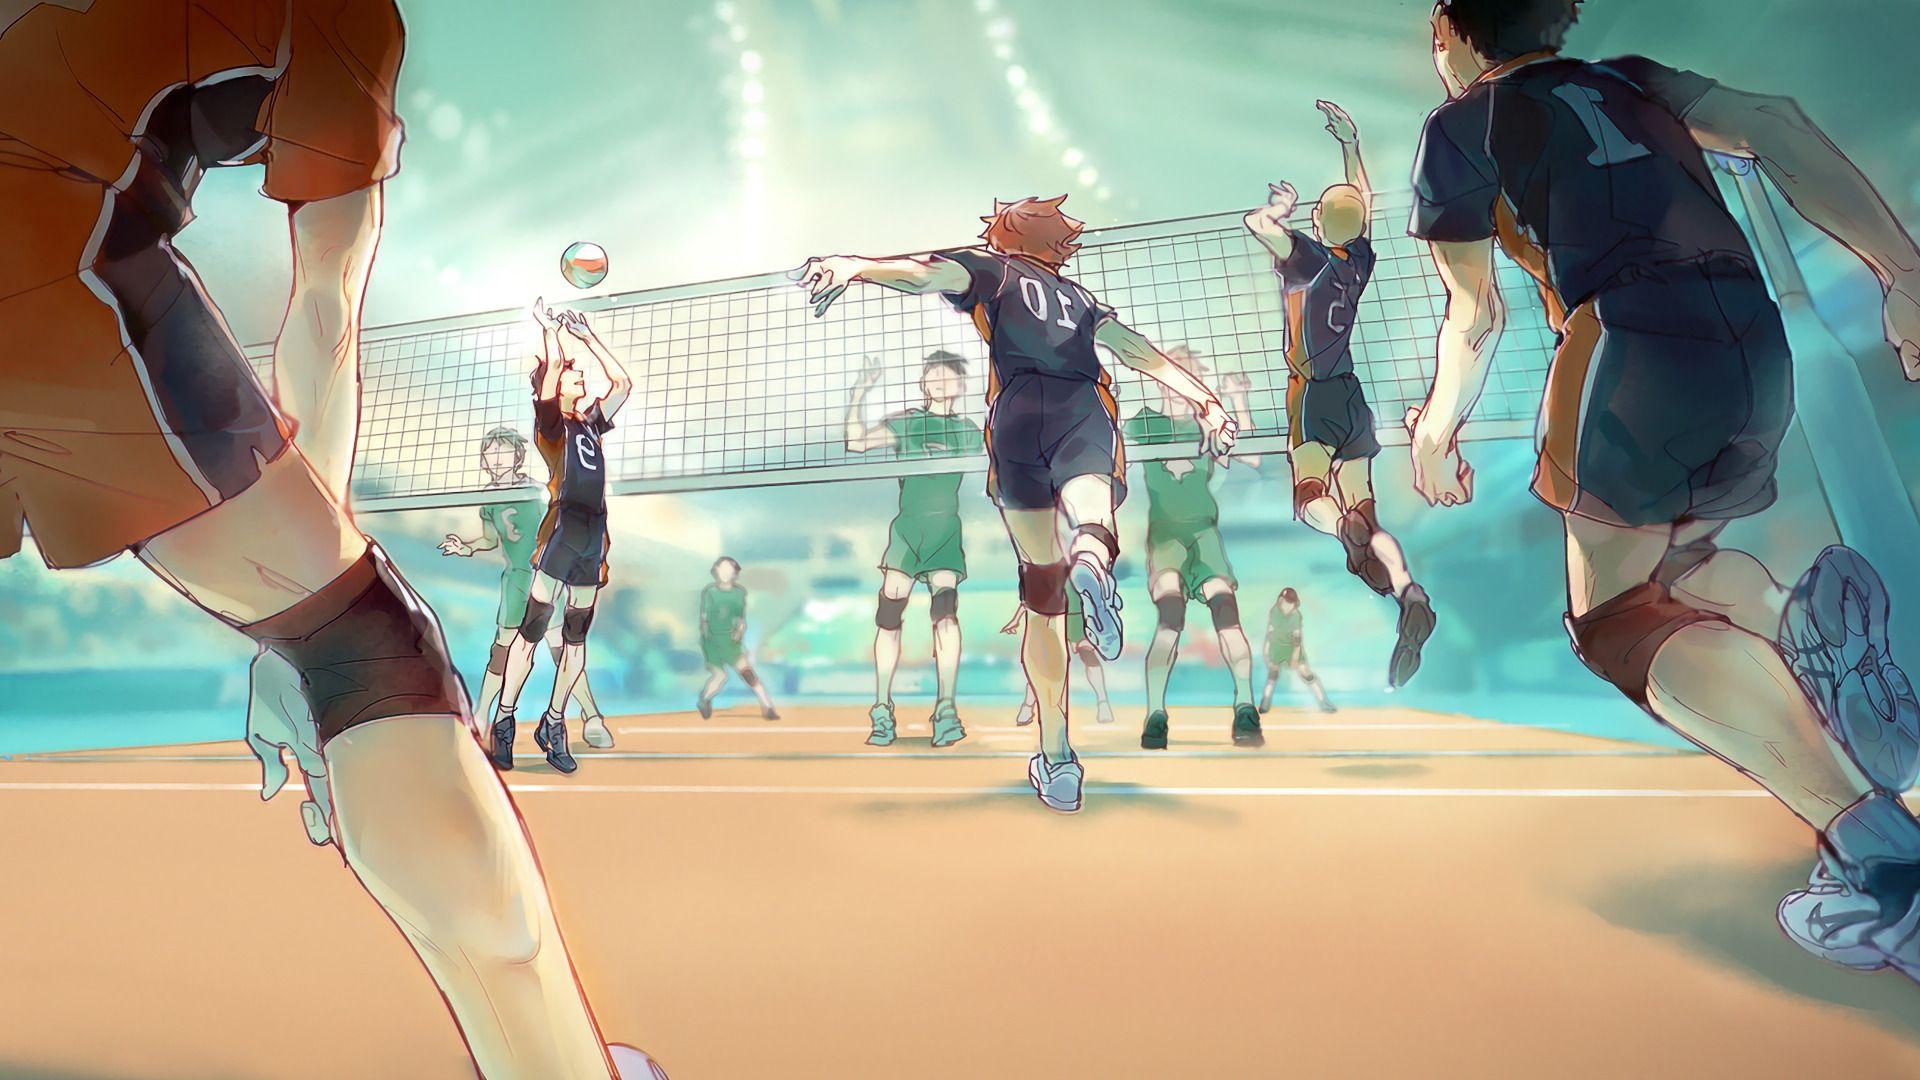 Các tấm hình nền anime về bóng chuyền đầy đủ sức quyến rũ và sự sôi động. Hãy thưởng thức những hình ảnh đầy màu sắc này để cảm nhận sự cuồng nhiệt của trận đấu bóng chuyền anime!